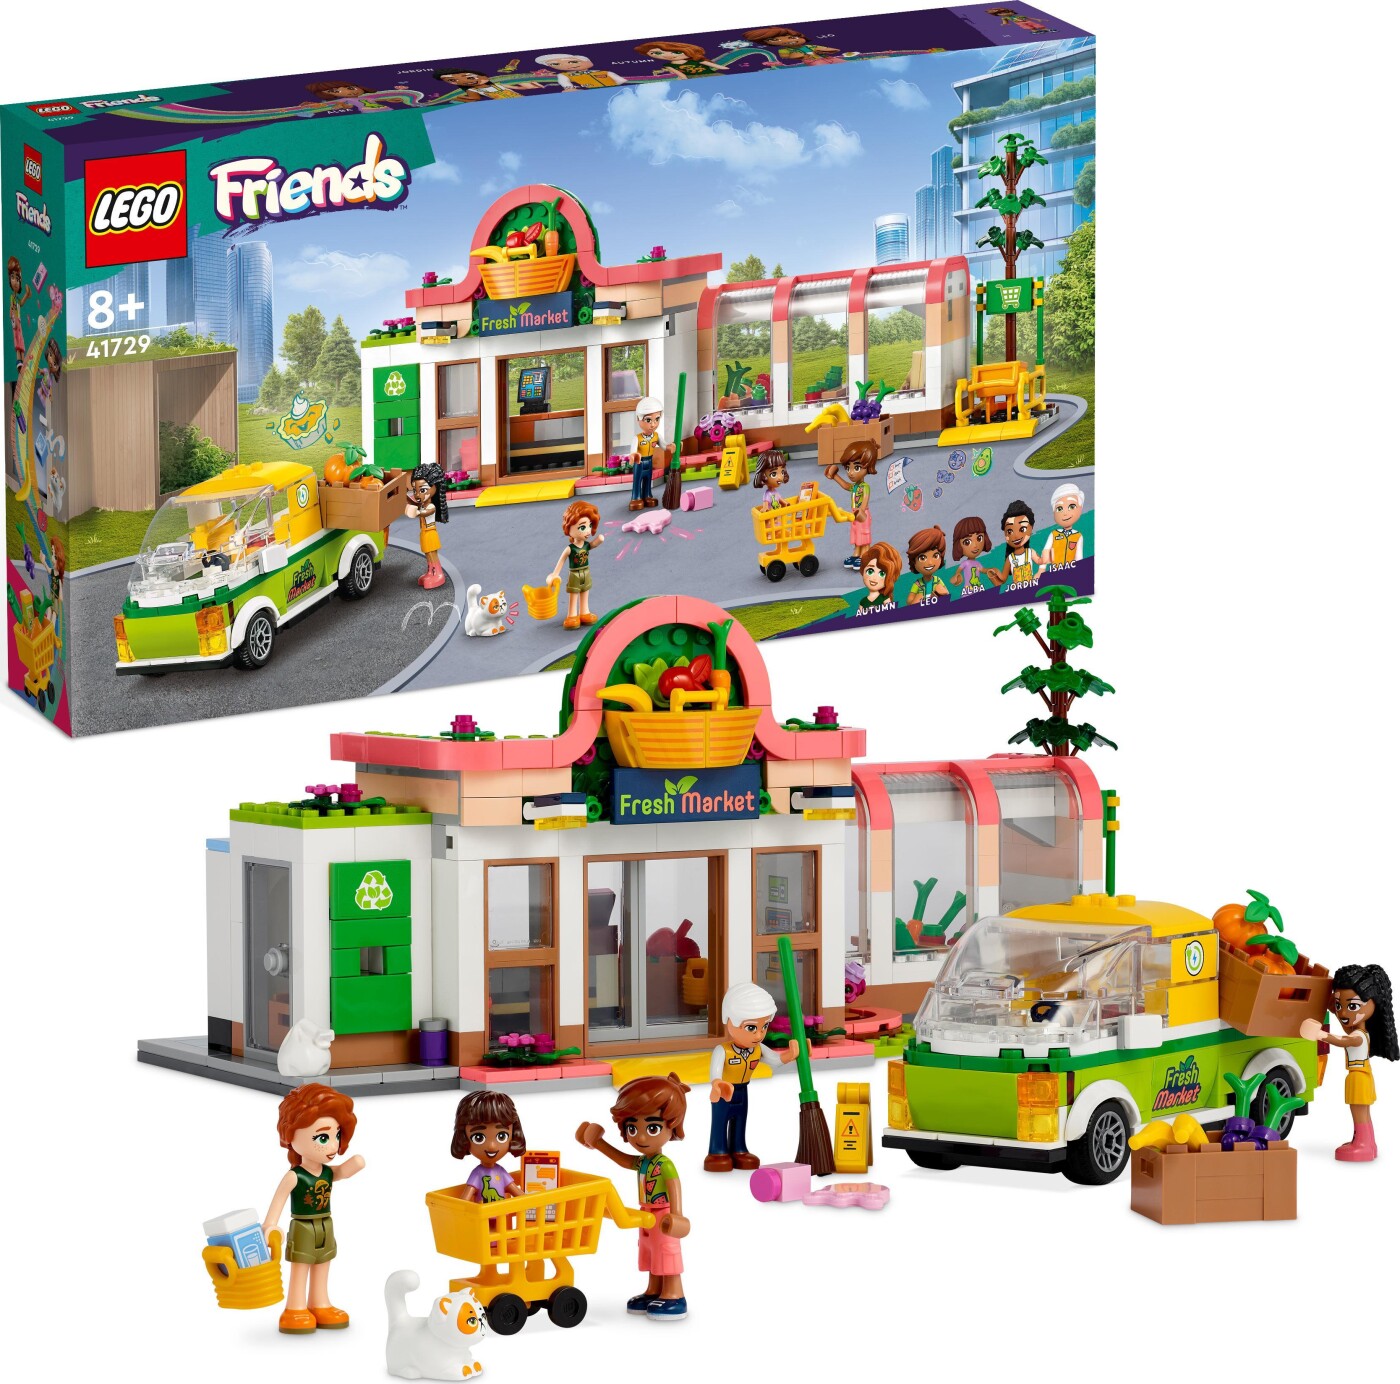 Billede af Lego Friends - økologisk Købmandsbutik - 41729